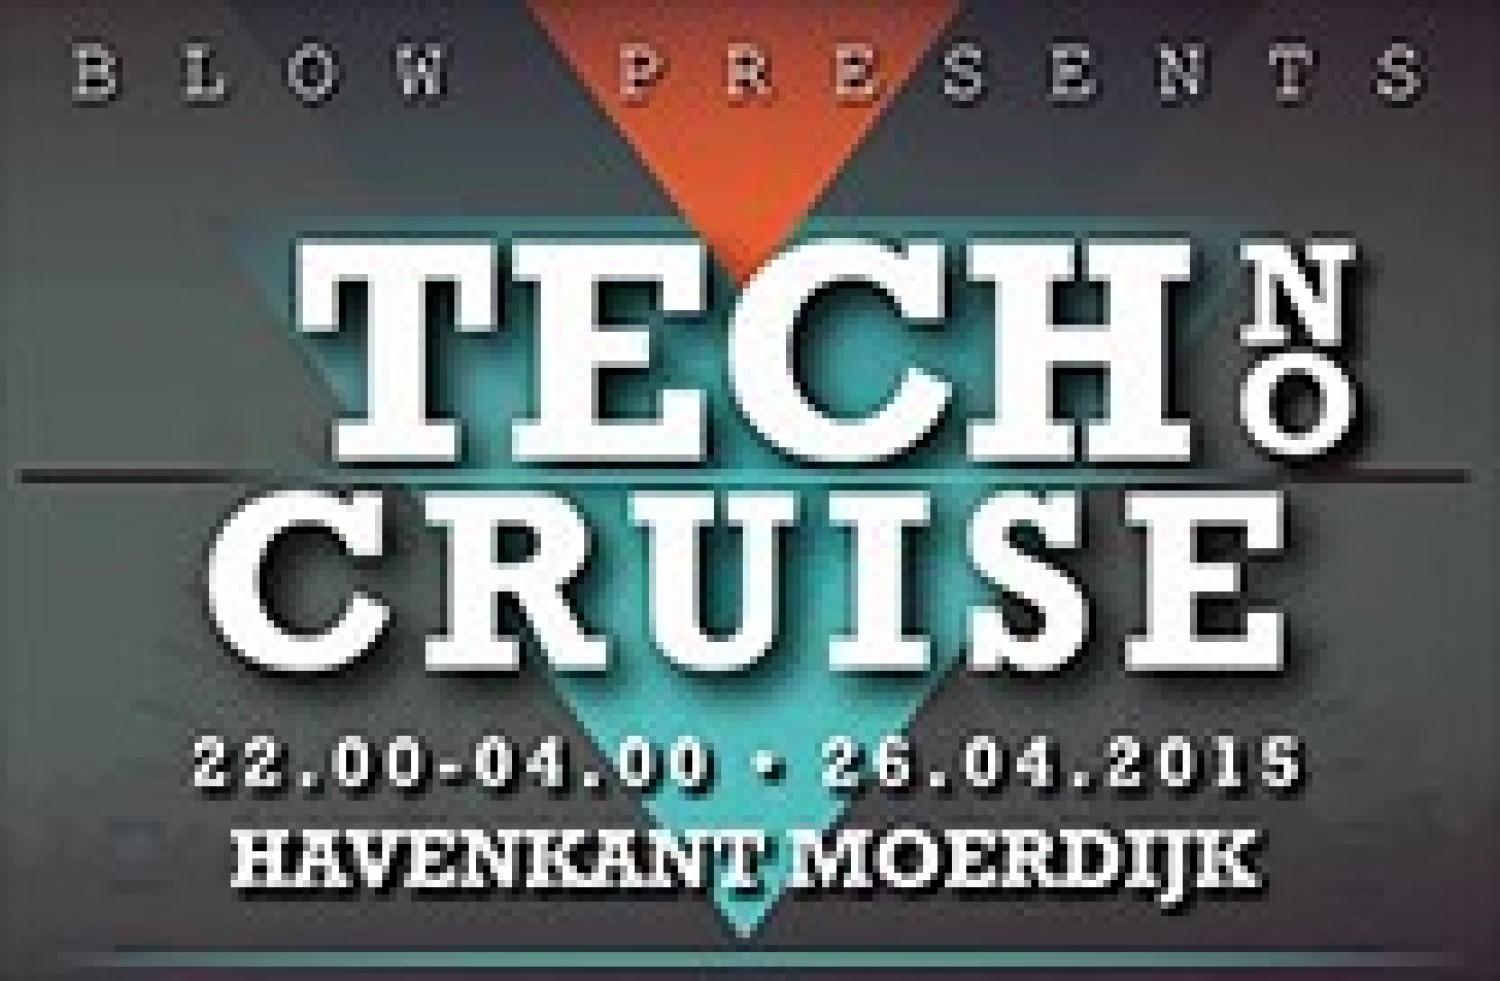 Party report: Tech No Cruise, Moerdijk (26-04-2015)